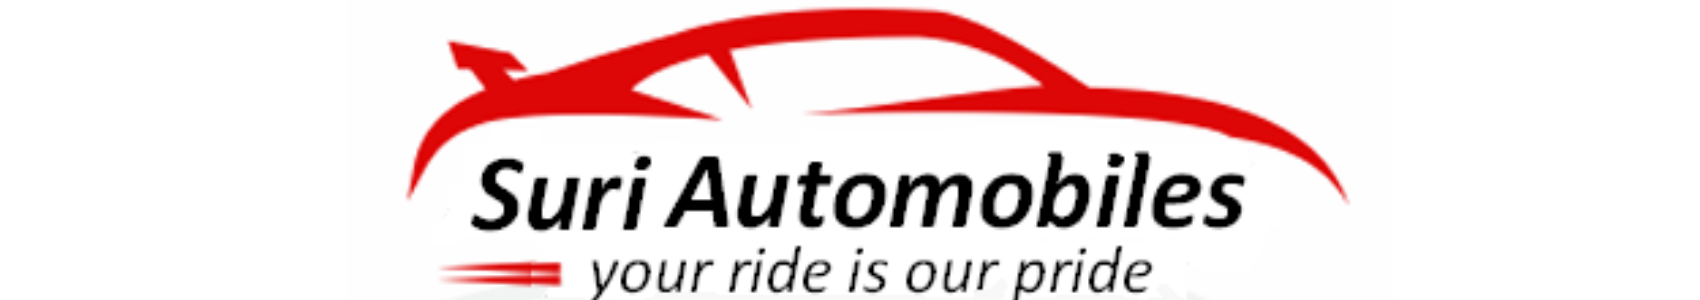 Suri Automobiles Logo